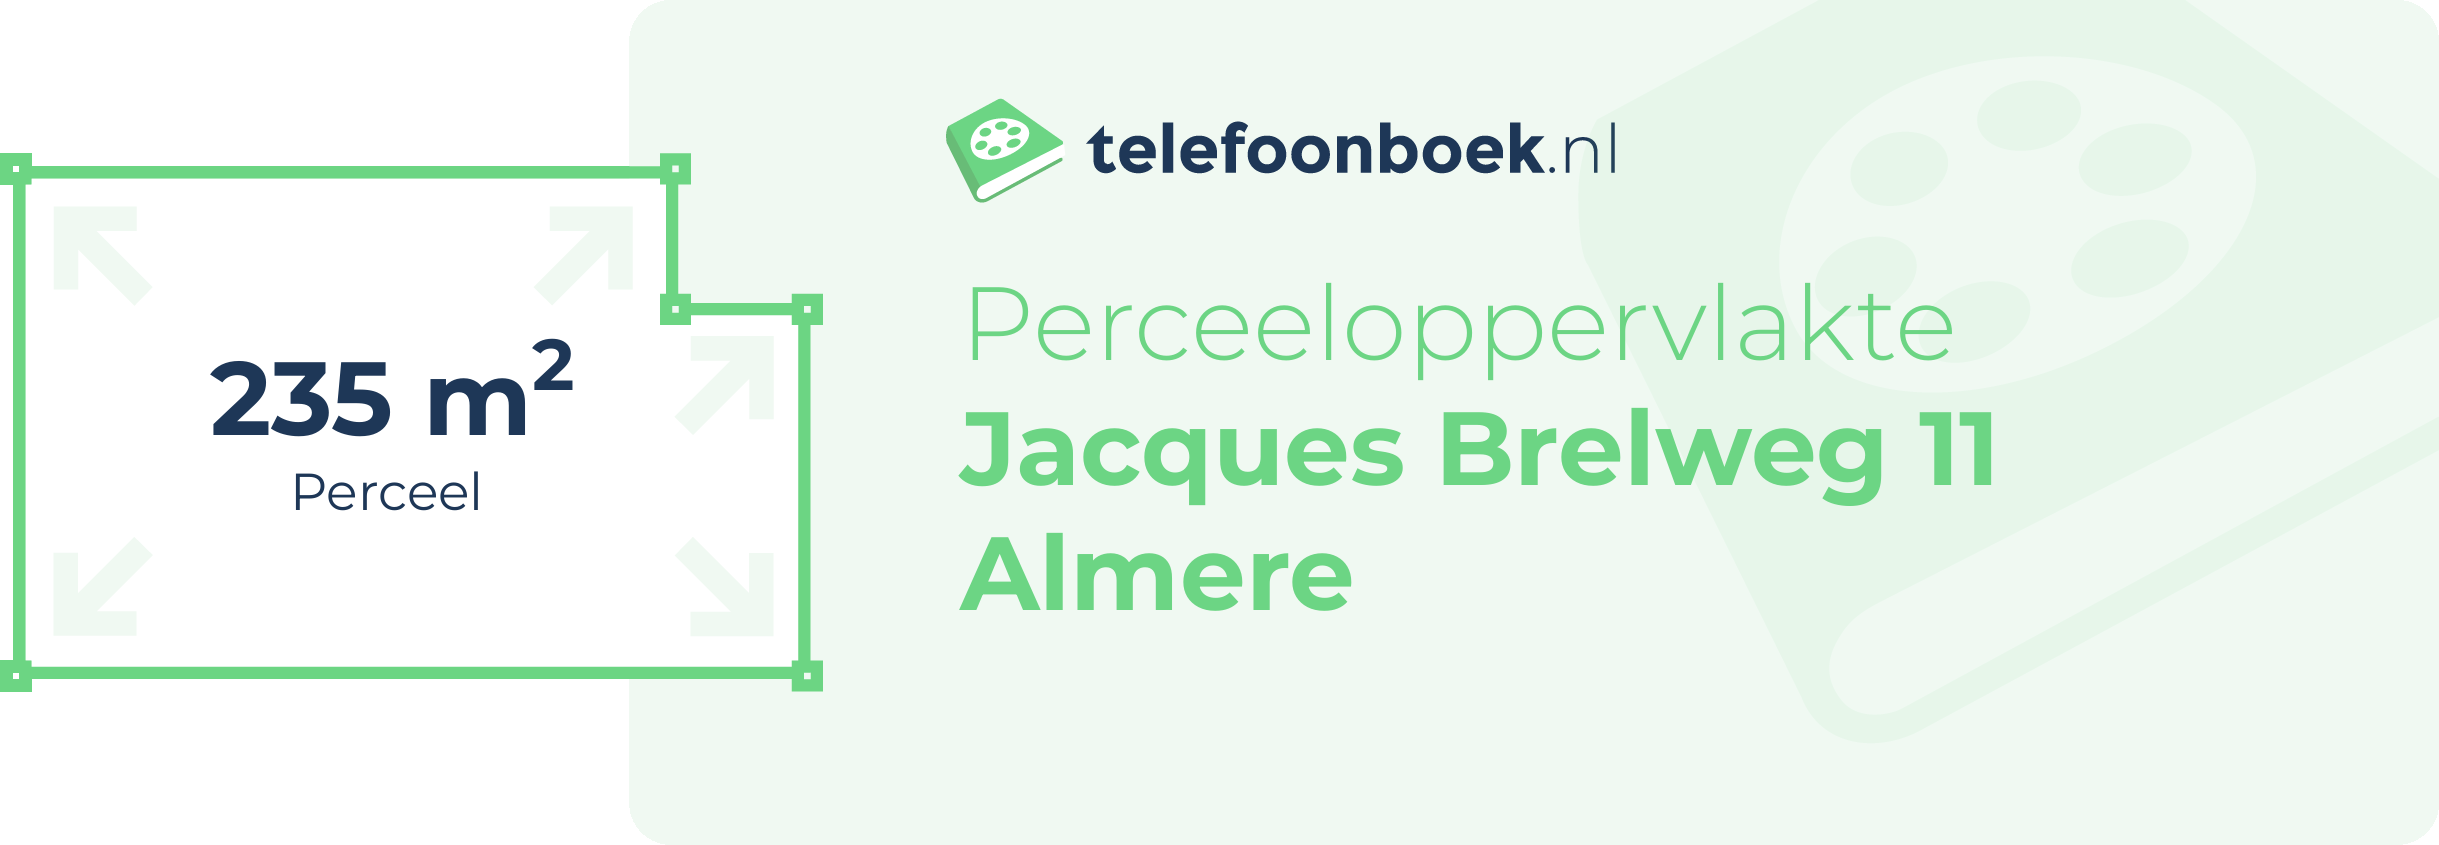 Perceeloppervlakte Jacques Brelweg 11 Almere